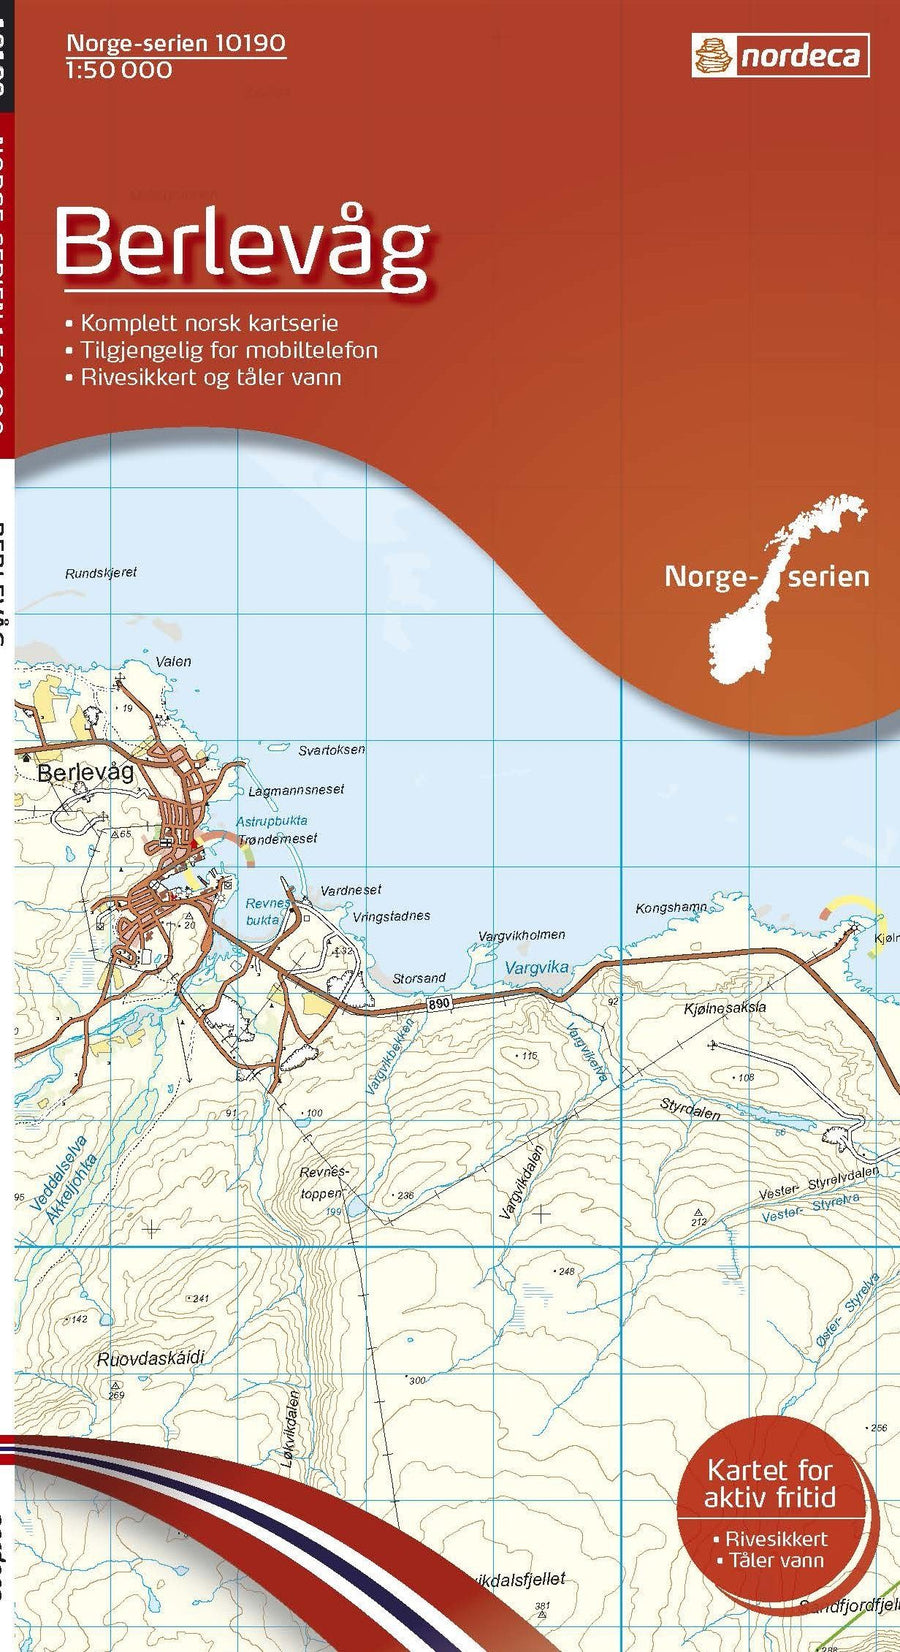 Carte de randonnée n° 10190 - Berlevag (Norvège) | Nordeca - Norge-serien carte pliée Nordeca 